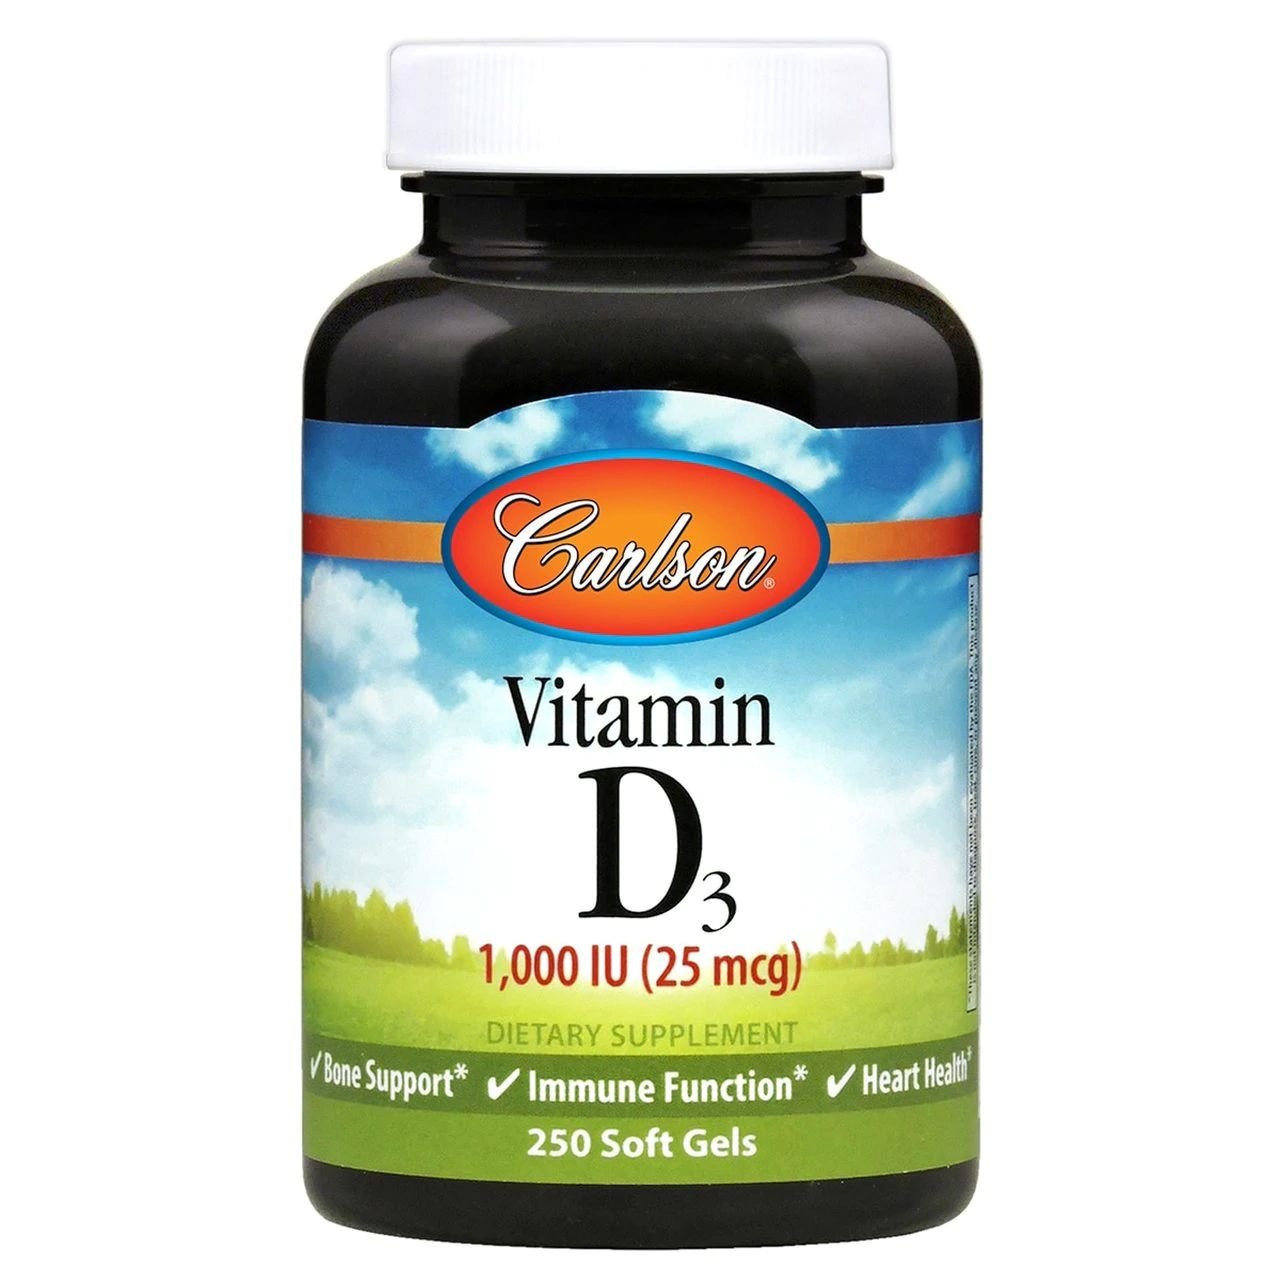 Витамины и минералы Carlson Labs Vitamin D3 1000 IU, 250 капсул,  мл, Carlson Labs. Витамины и минералы. Поддержание здоровья Укрепление иммунитета 